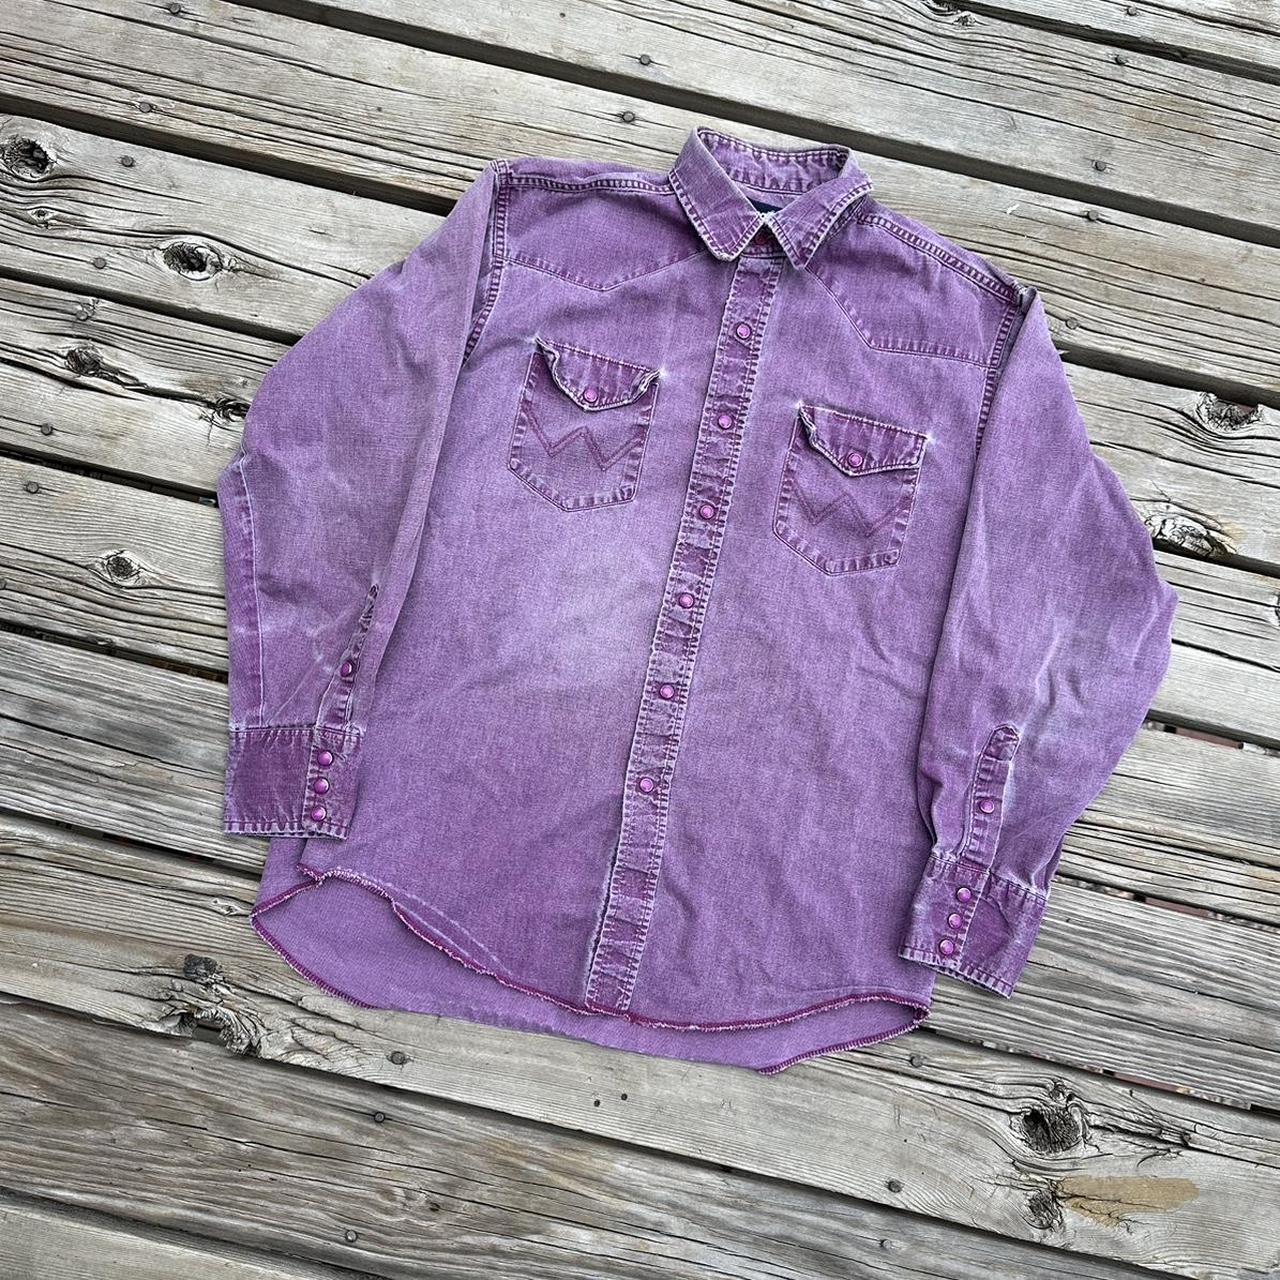 1990s Pink Wrangler Western Shirt 🌵 Vintage 1990s... - Depop